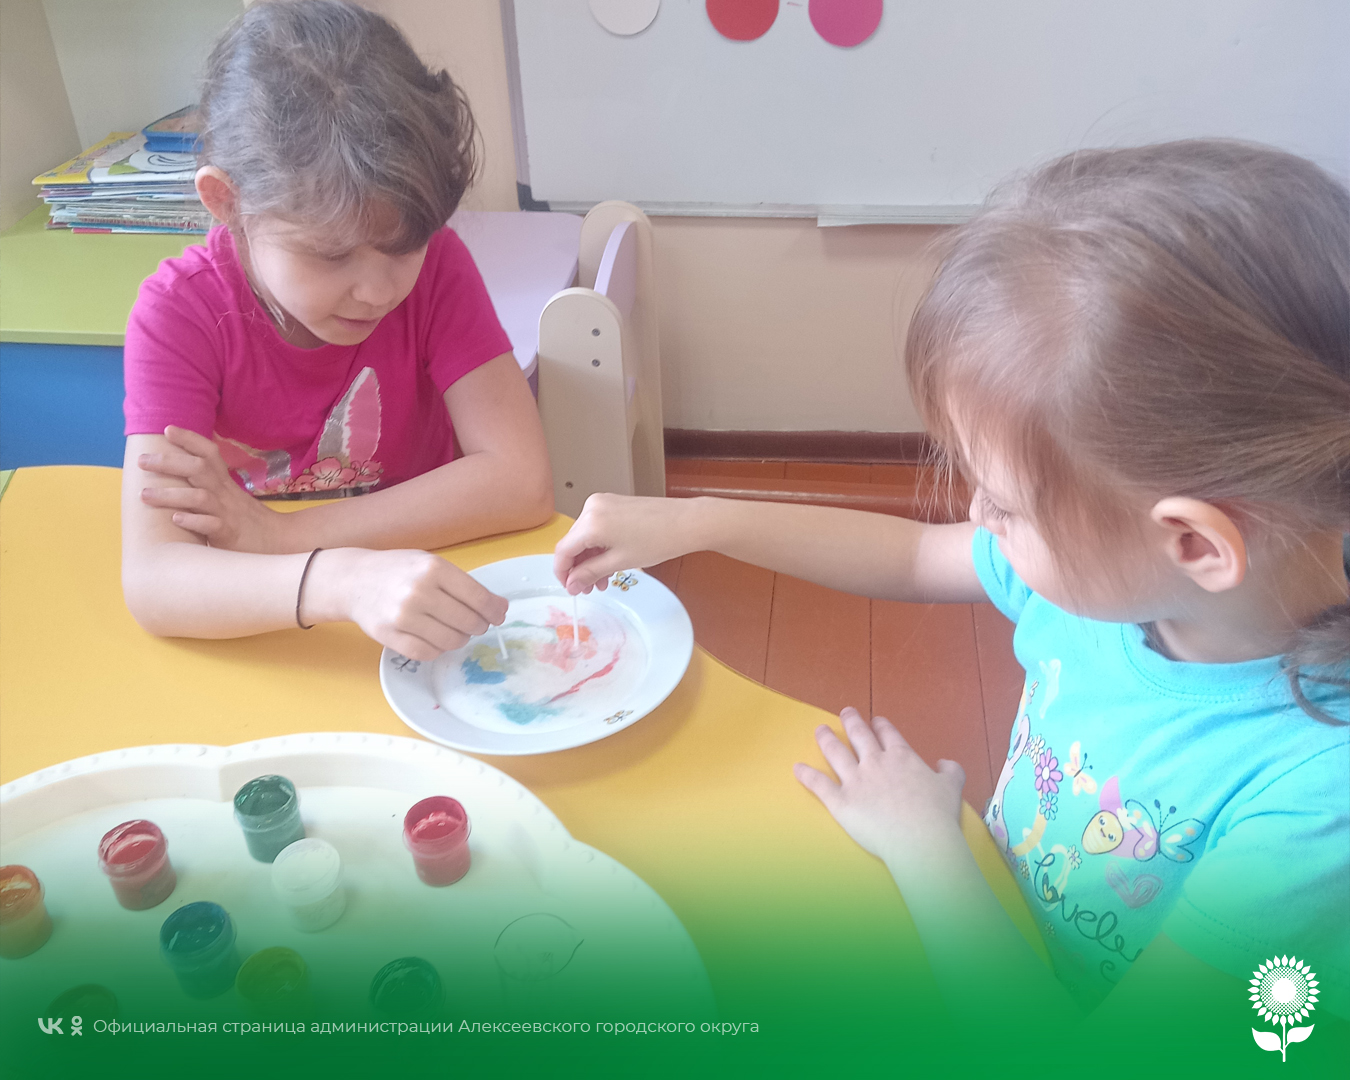 В детских садах Алексеевского городского округа воспитатели провели тематическое мероприятие, посвящённое Дню смешивания красок